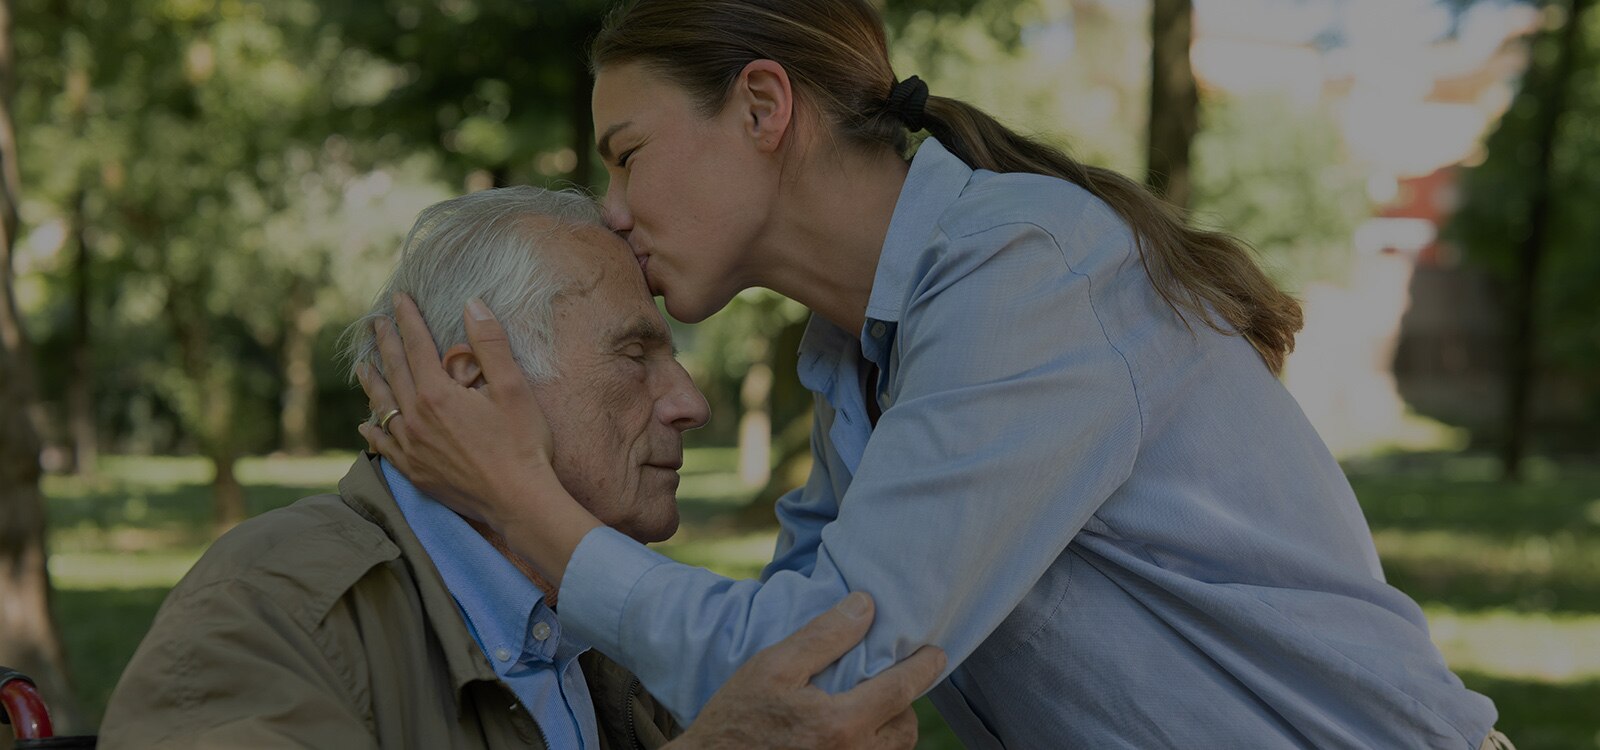 Caregiver che bacia la persona amata sulla fronte